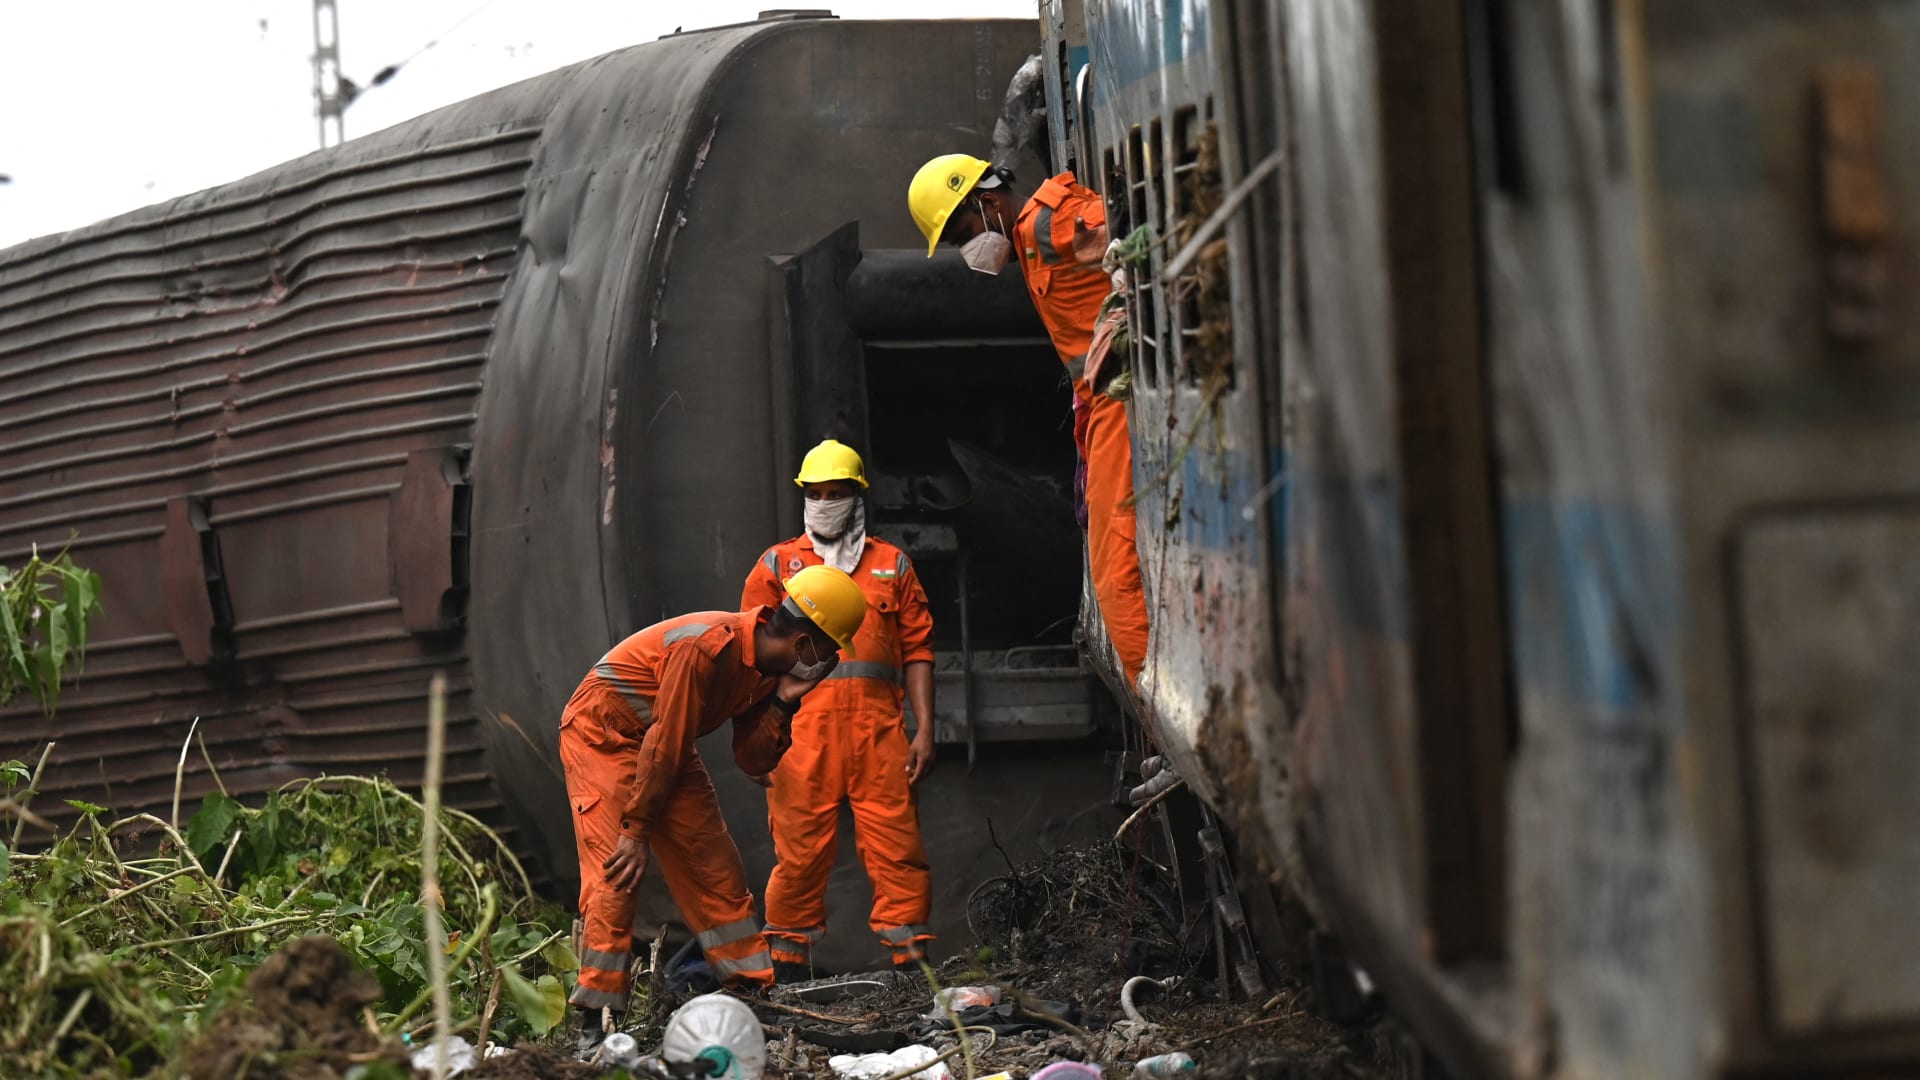 بعد أيام على حادثة القطار الذي أودى بحياة 233 شخصا في الهند.. العثور على شاب على قيد الحياة